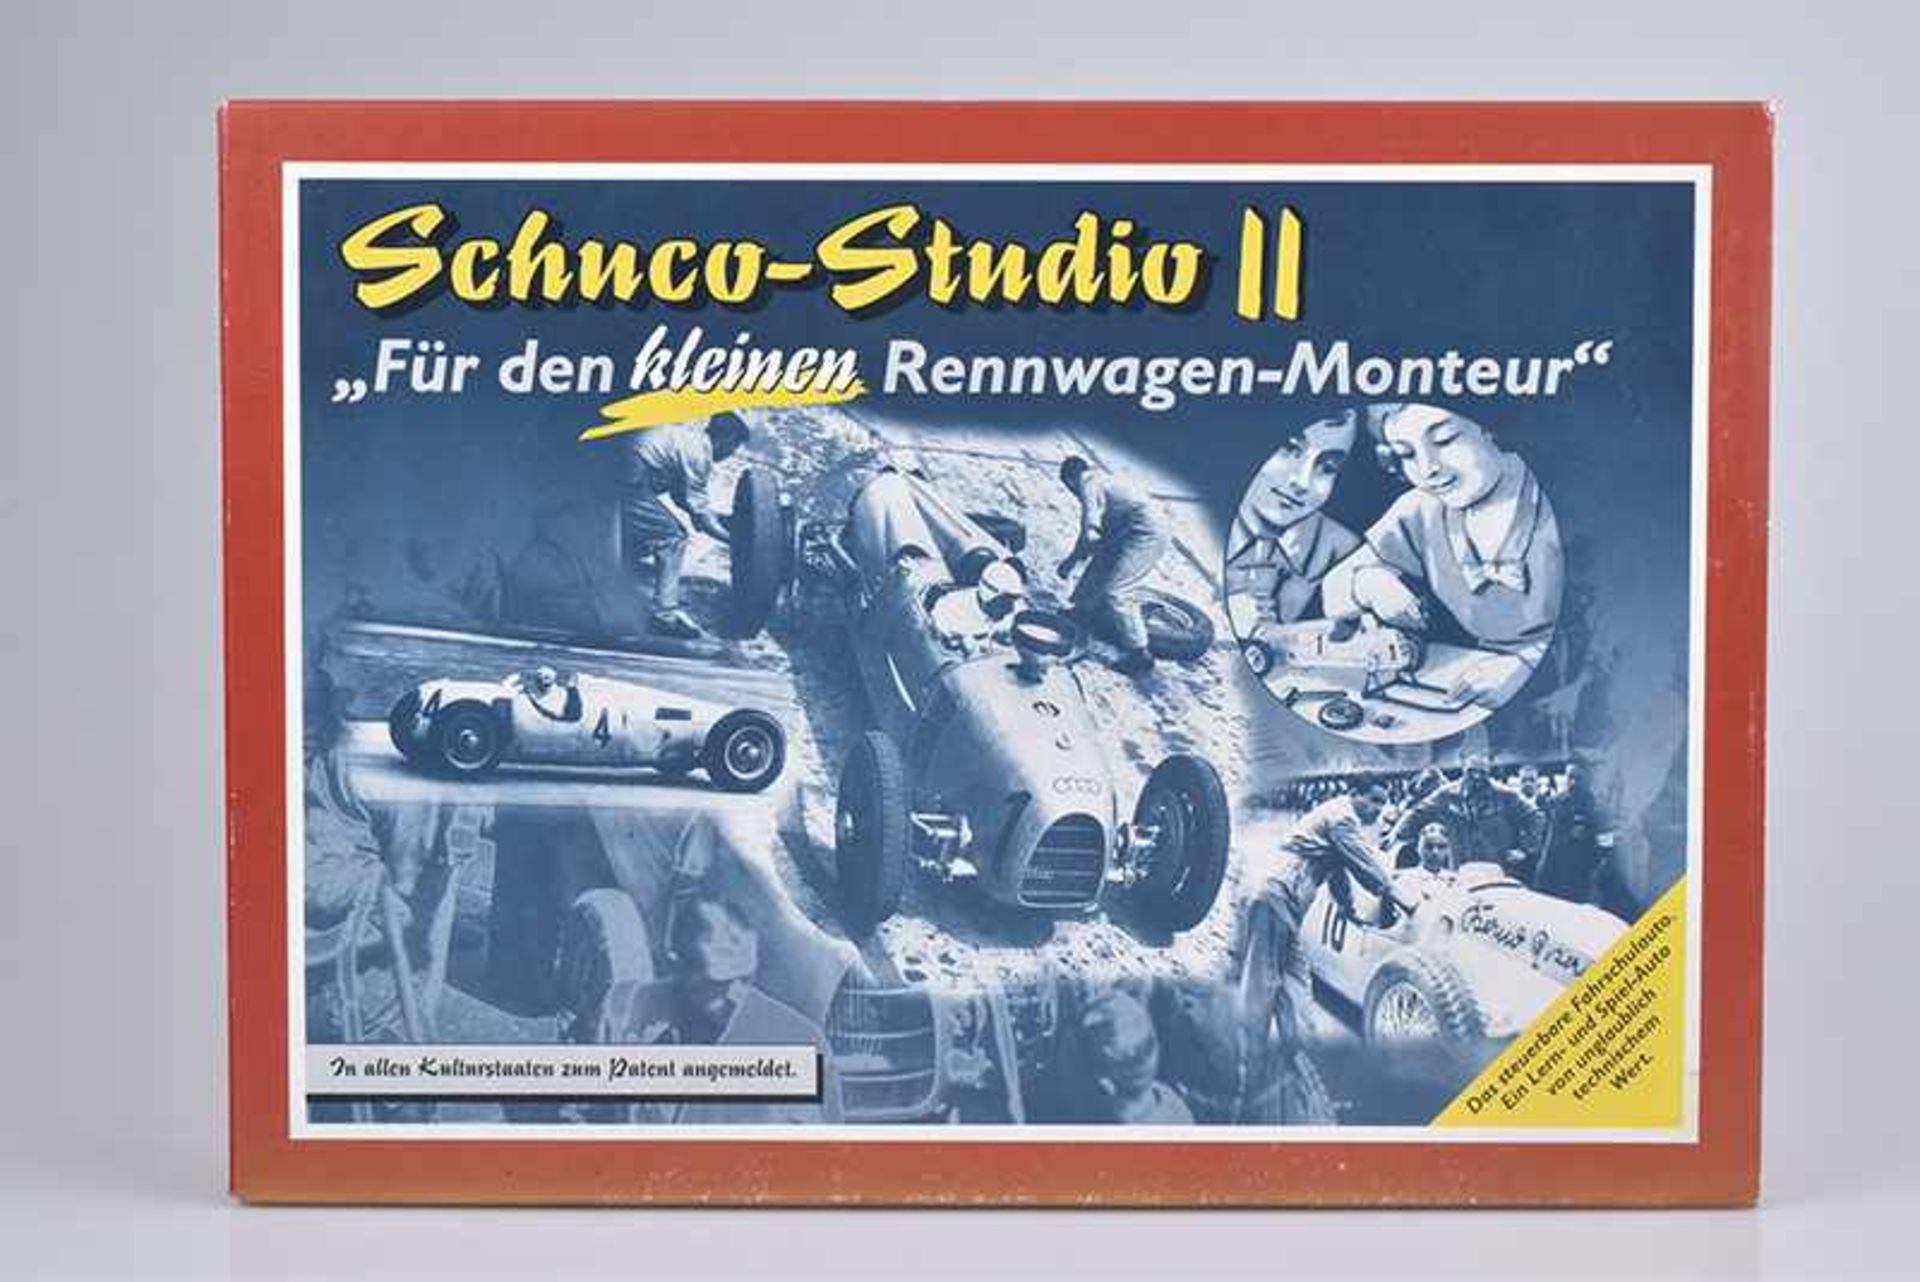 SCHUCO-STUDIO II "Für den kleinen Rennwagen-Monteur", Modell-Nr. 01222, Blech, Rennwagen Startnummer